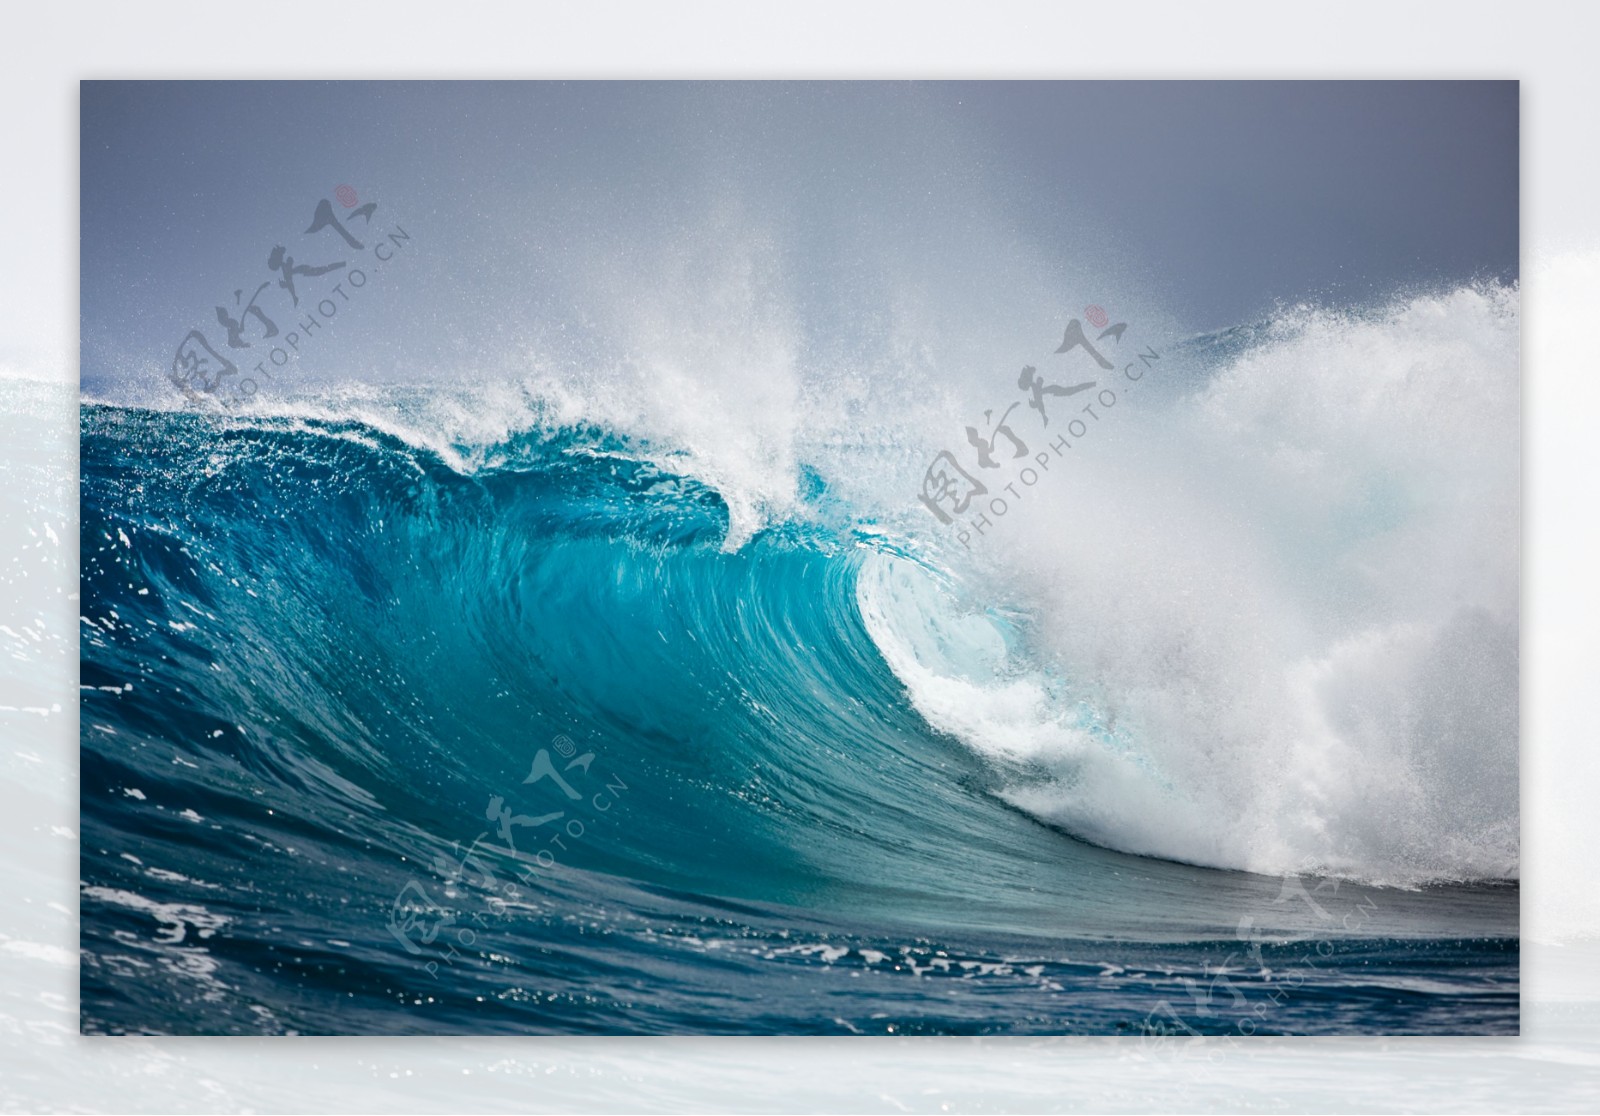 汹涌的海浪摄影图